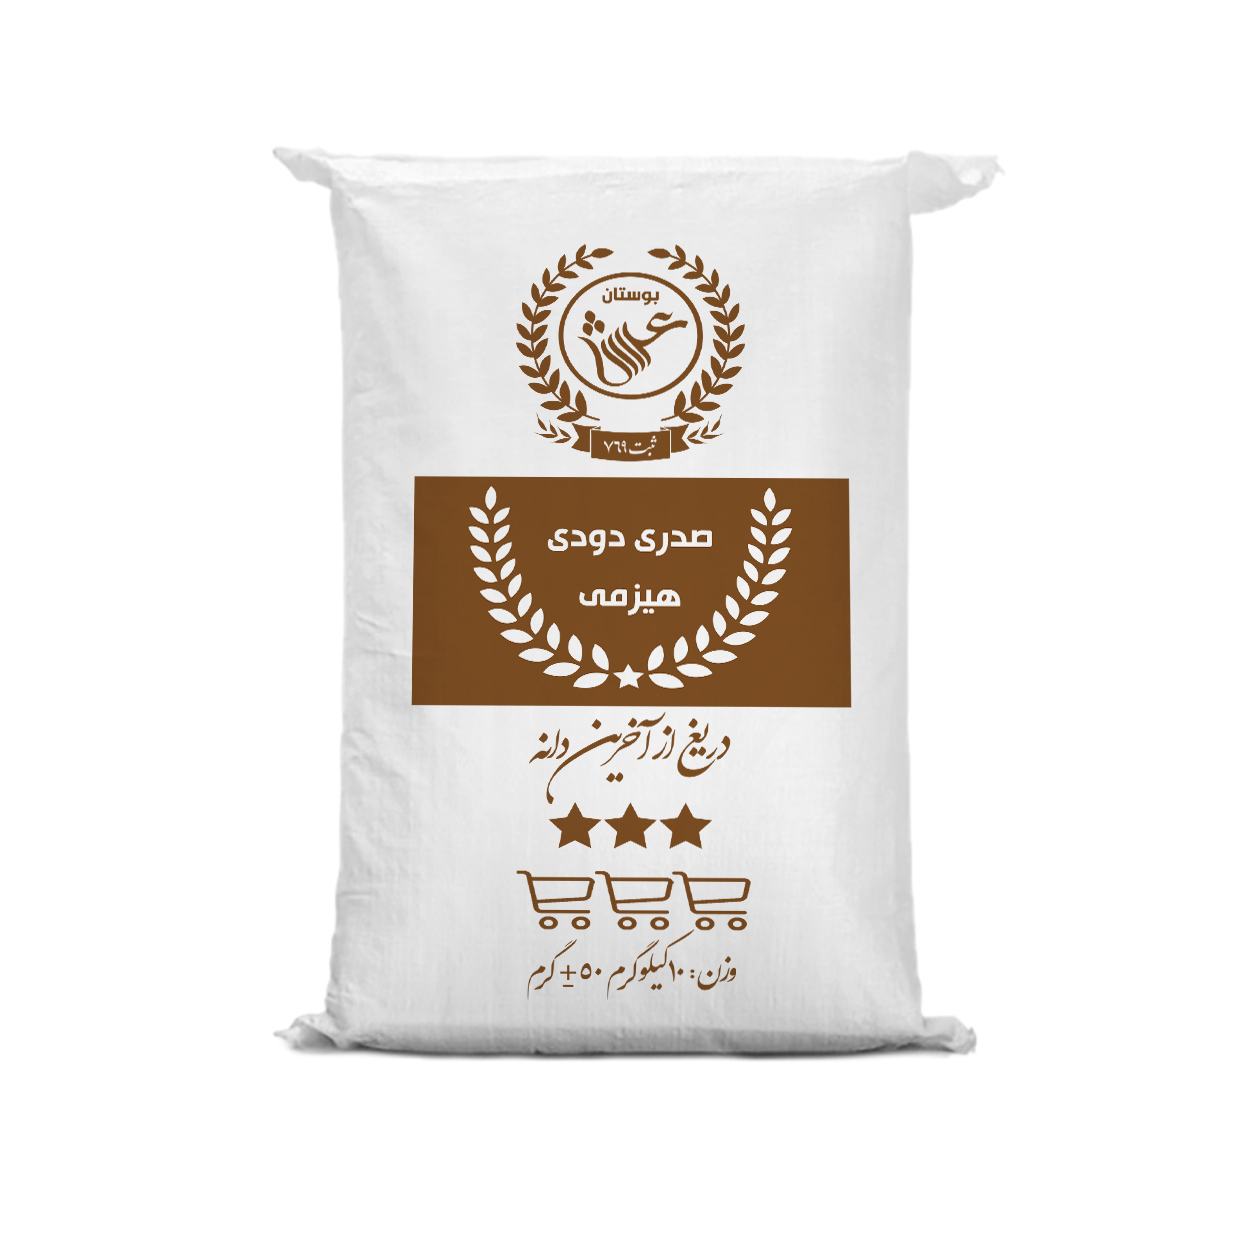 نکته خرید - قیمت روز برنج ایرانی صدری دودی هیزمی گیلان بوستان عرش - 10 کیلوگرم خرید